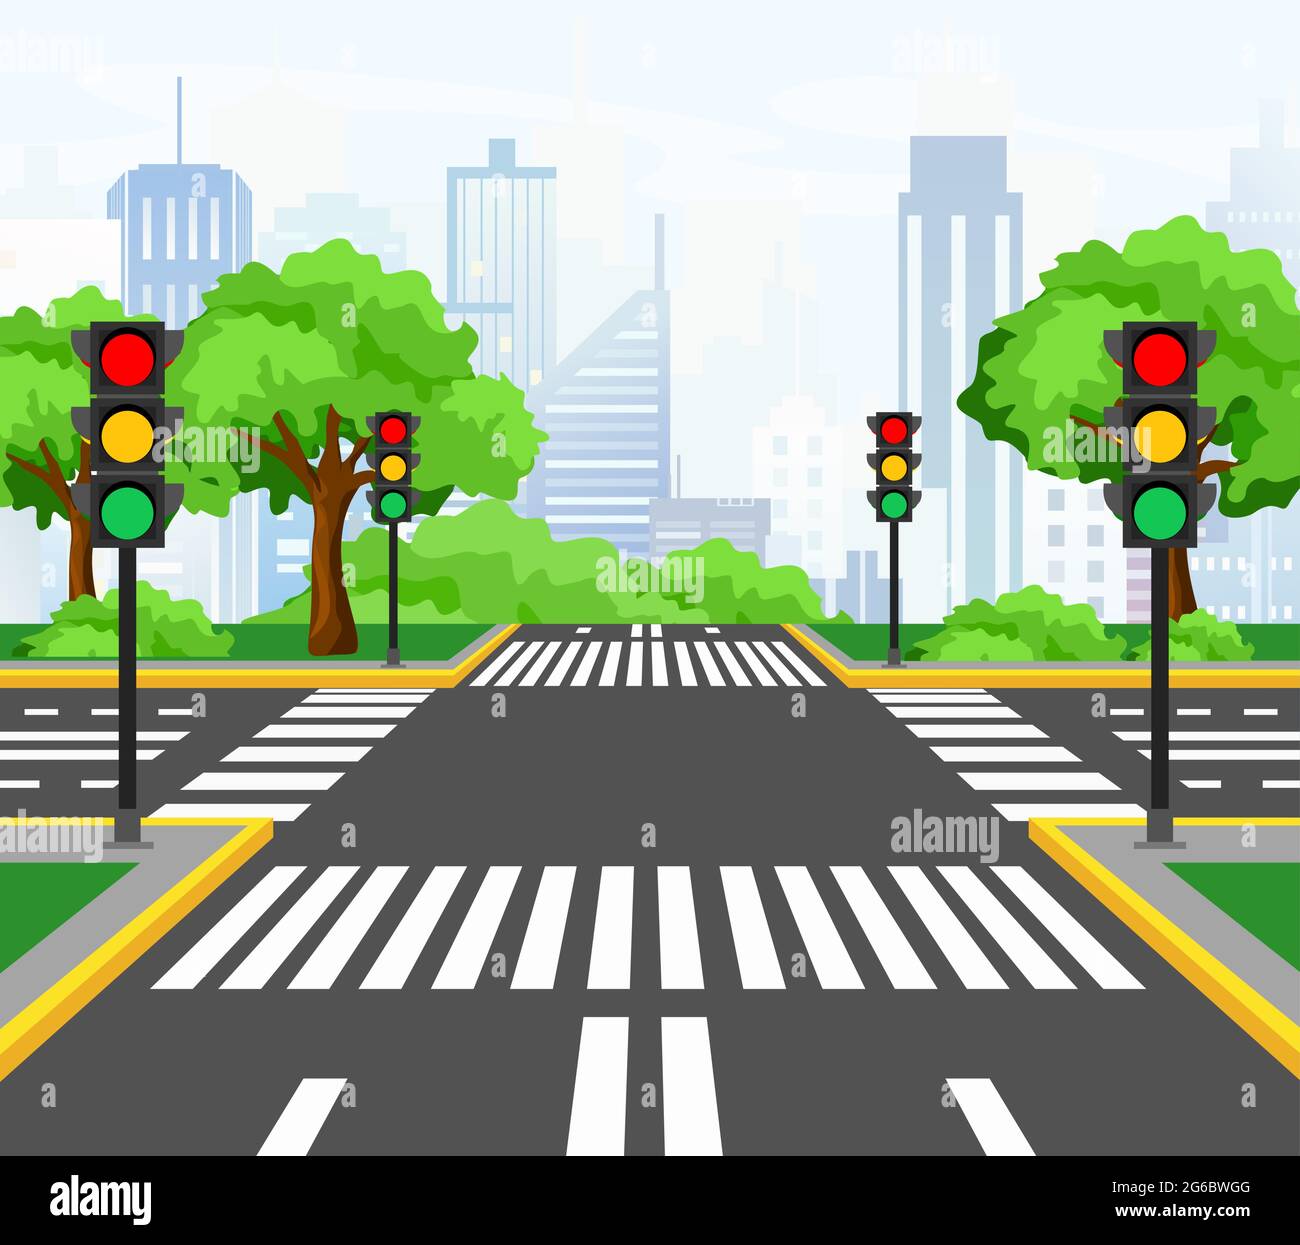 Illustrazione vettoriale delle strade che attraversano la città moderna, incrocio con semafori, segnaletica, alberi e marciapiede per i pedoni. Bellissima Illustrazione Vettoriale